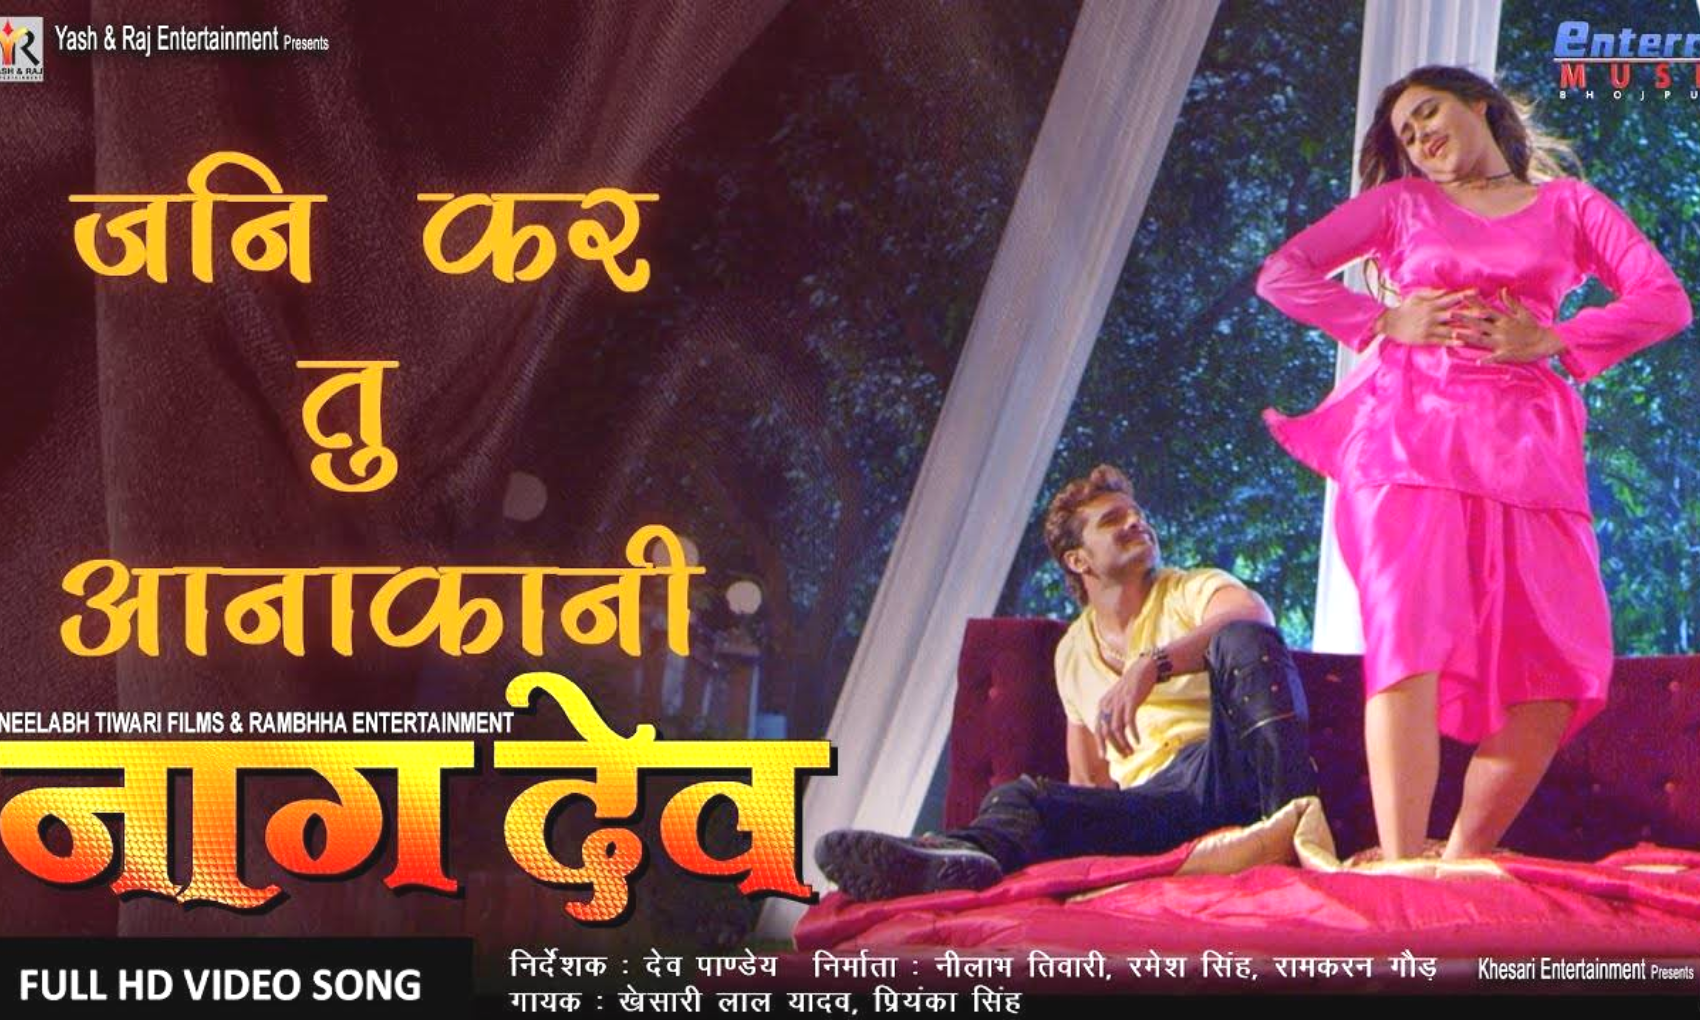 Bhojpuri: नाइटी पहने बेड पर खेसारी लाल के साथ रोमांस करती नजर आईं काजल राघवानी, वायरल हुआ ये वीडियो!